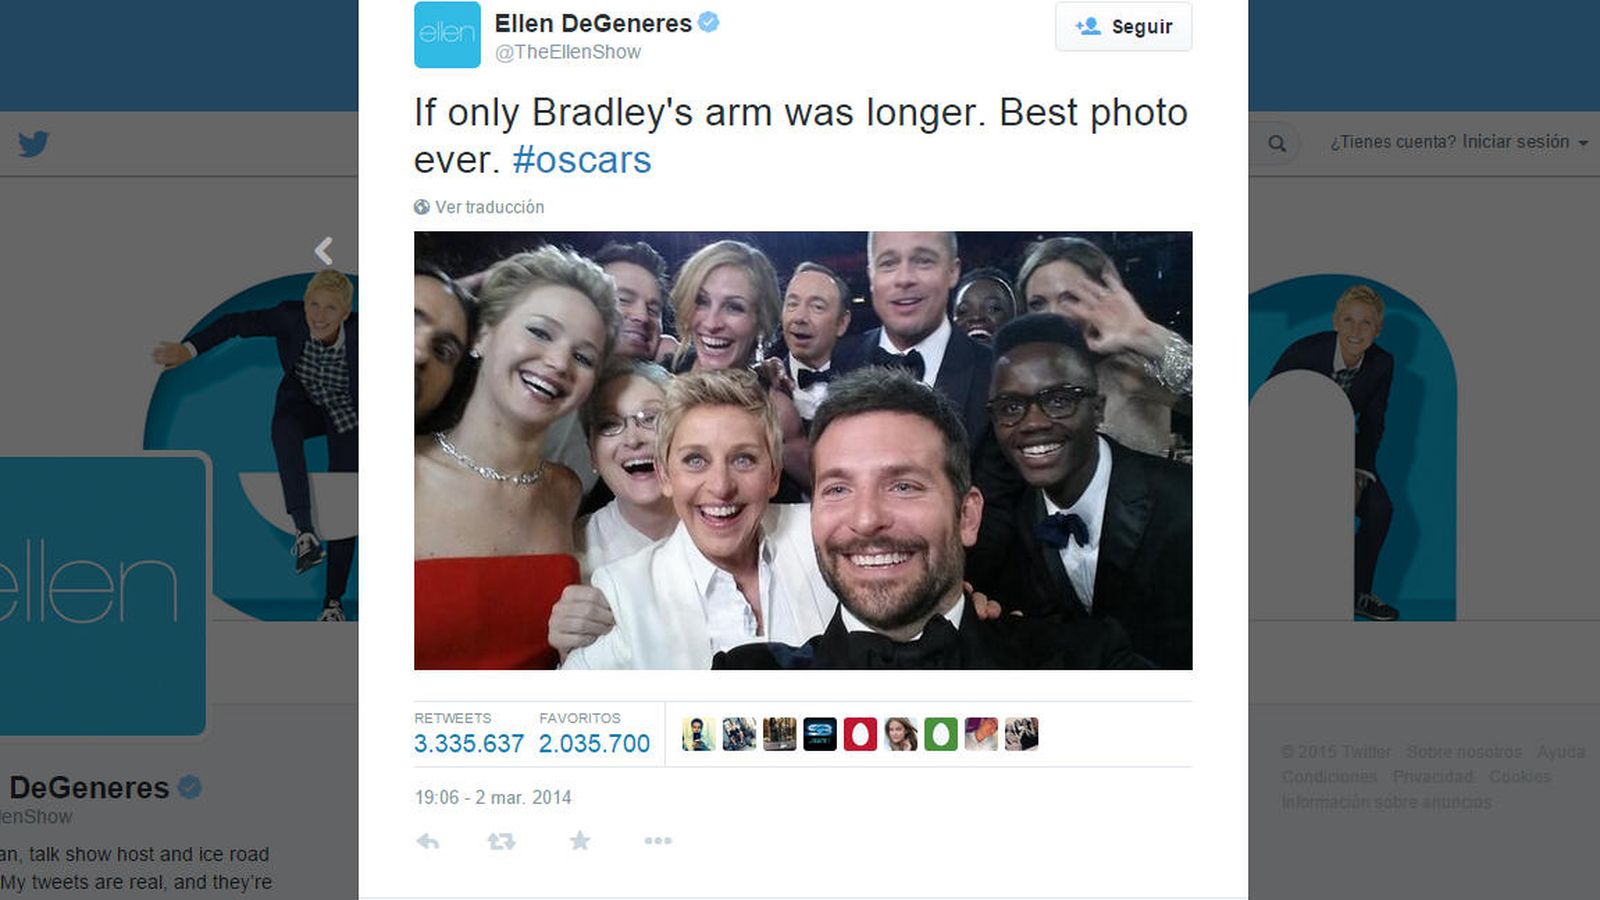 Foto: Este selfie con Brad Pitt, Julia Roberts y Jennifer Lawrence en la ceremonia del Oscar es uno de los más famosos de la historia y superó el récord de retuits de una foto de la reelección de Obama. (Foto: Ellen DeGeneres)